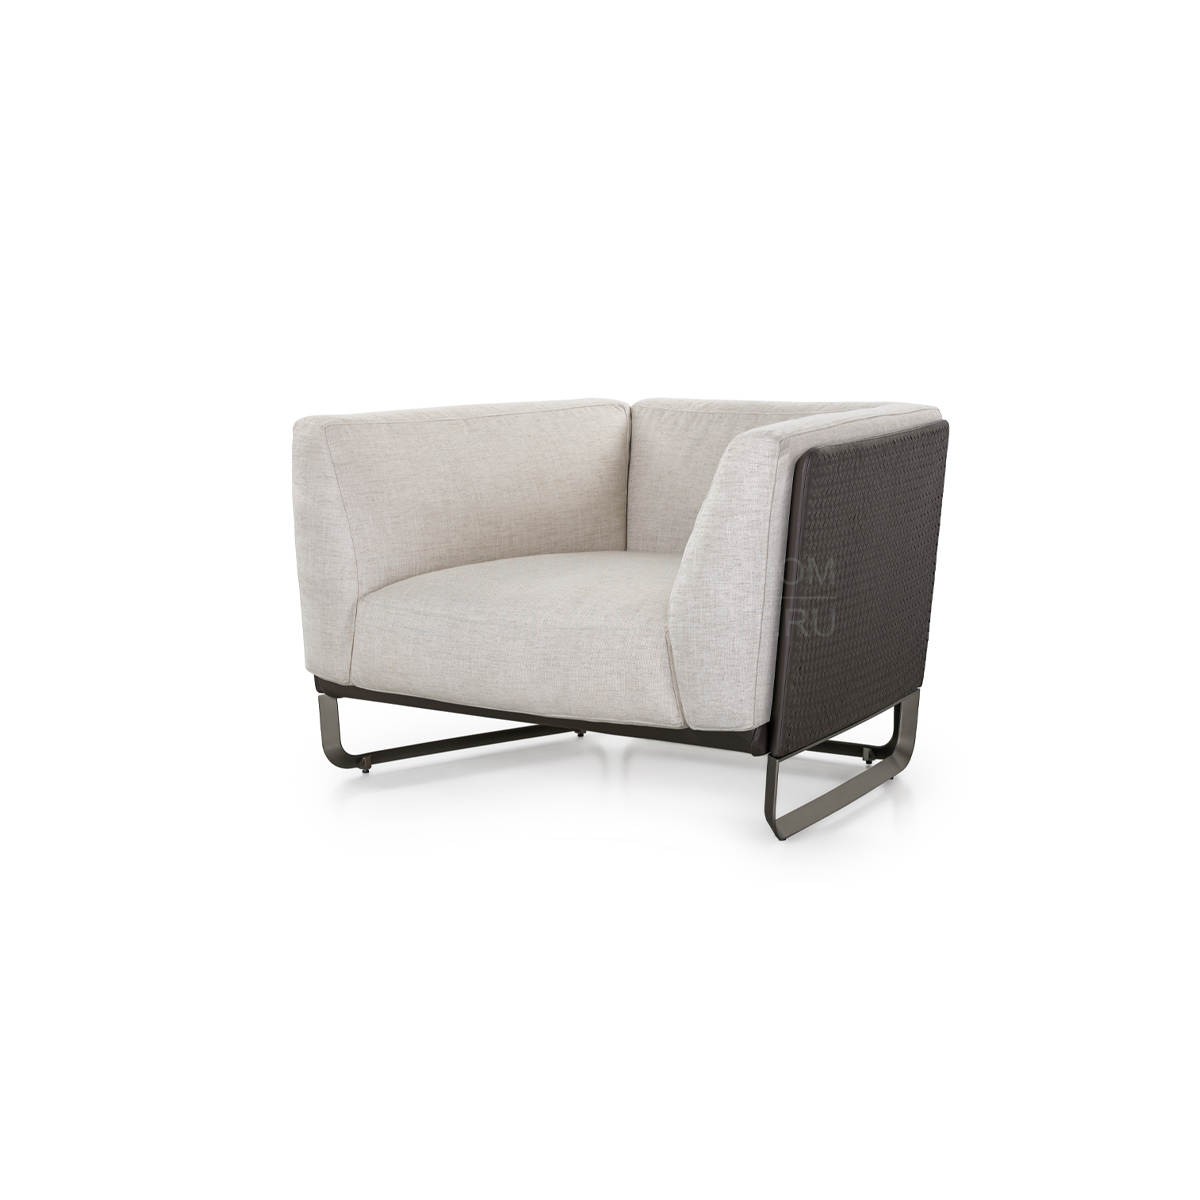 Кресло Milano armchair из Италии фабрики TURRI